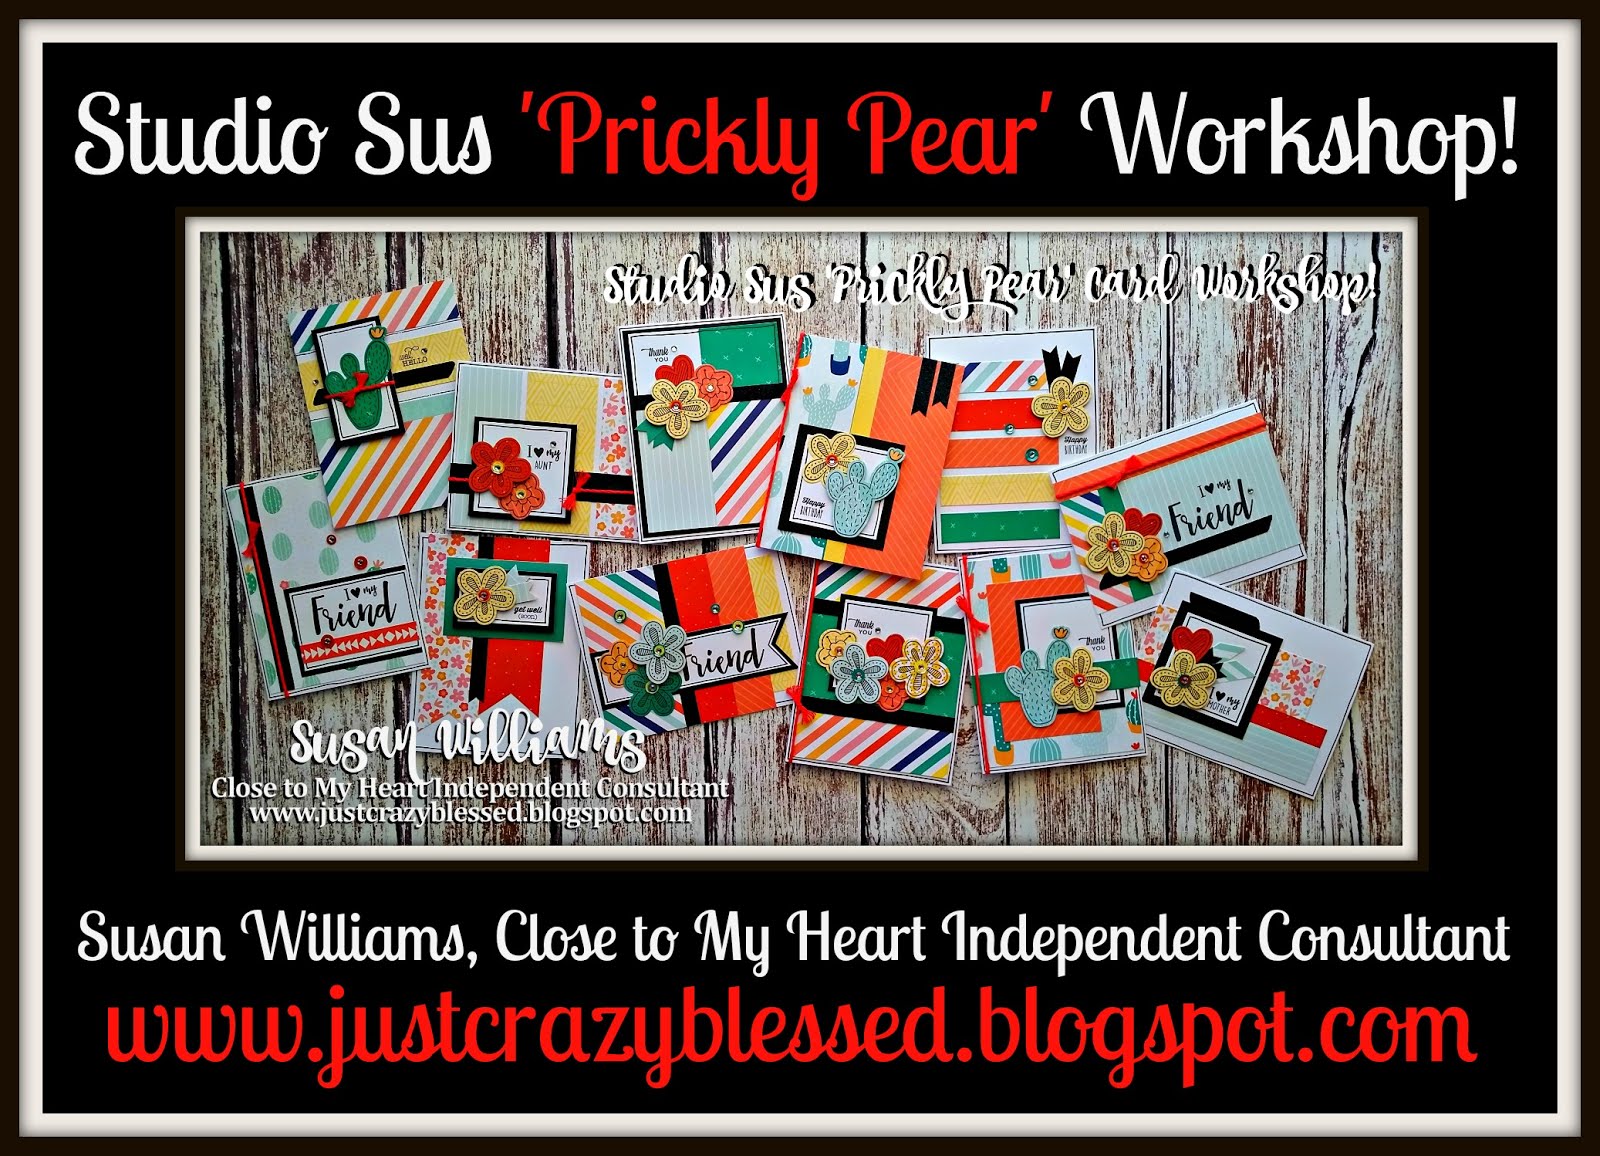 'Prickly Pear' Cardmaking Workshop!